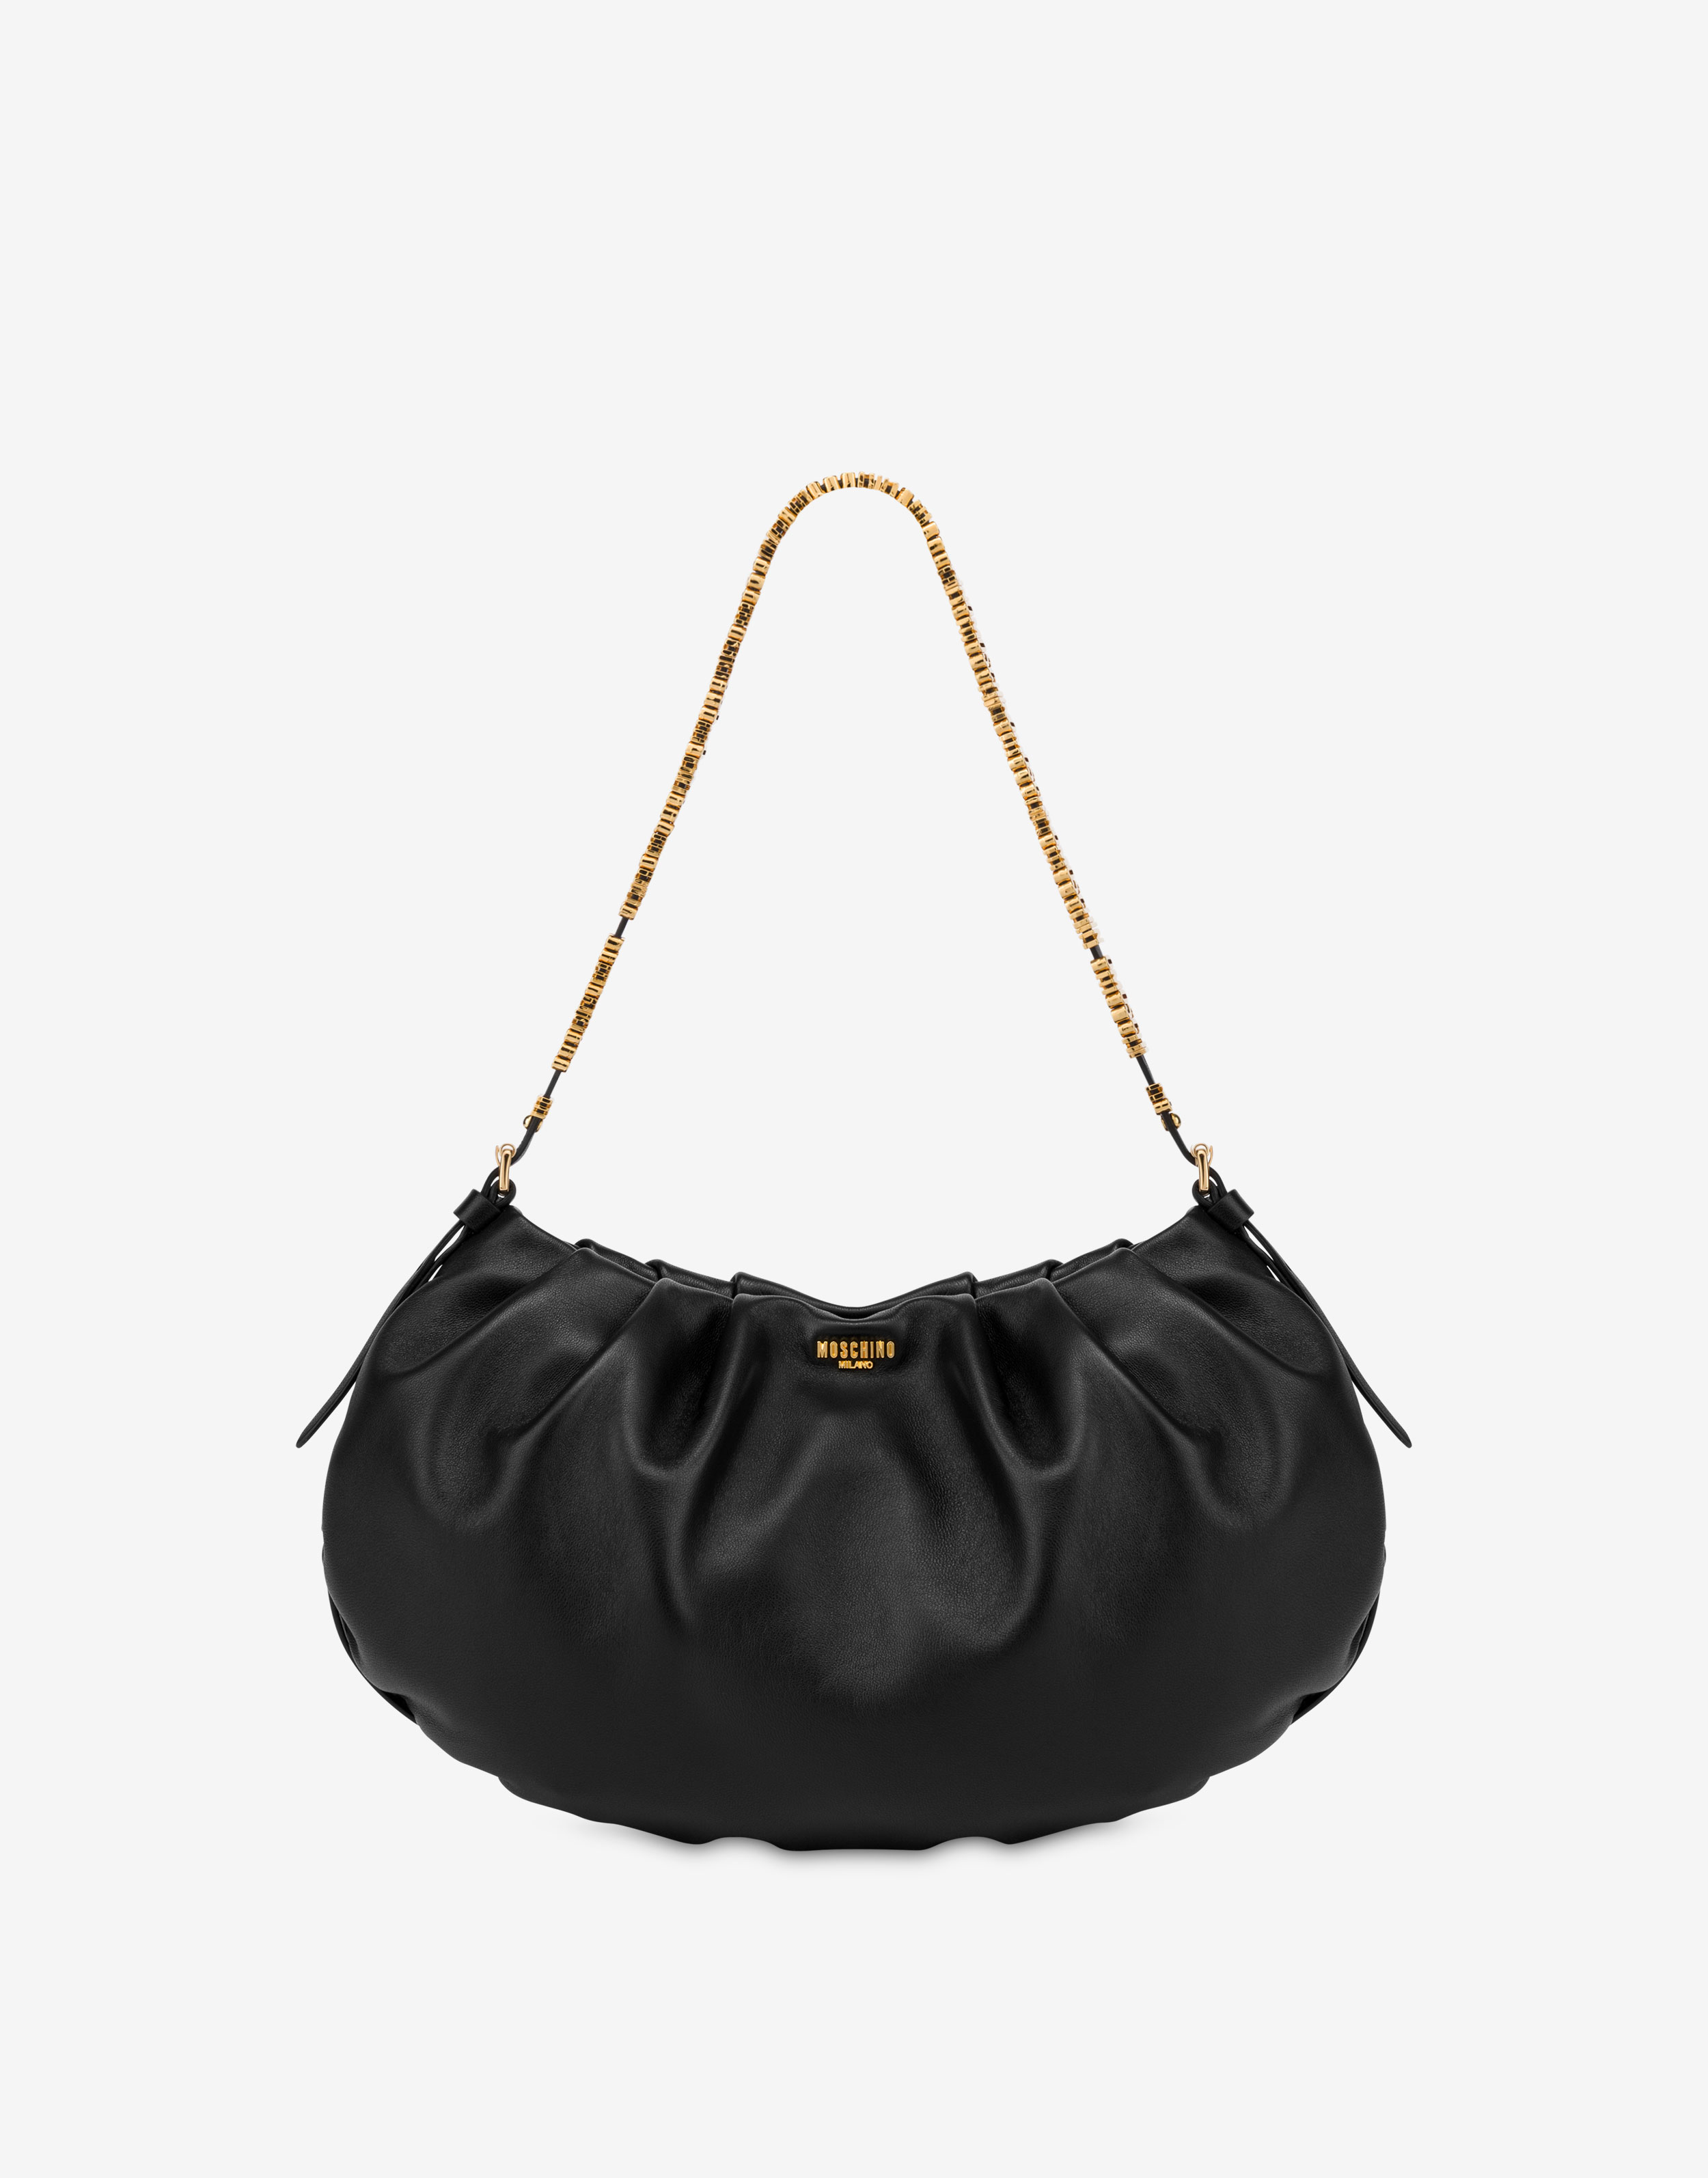 Celeste Leather Hobo Bag - Saddle - Go Forth Goods ®